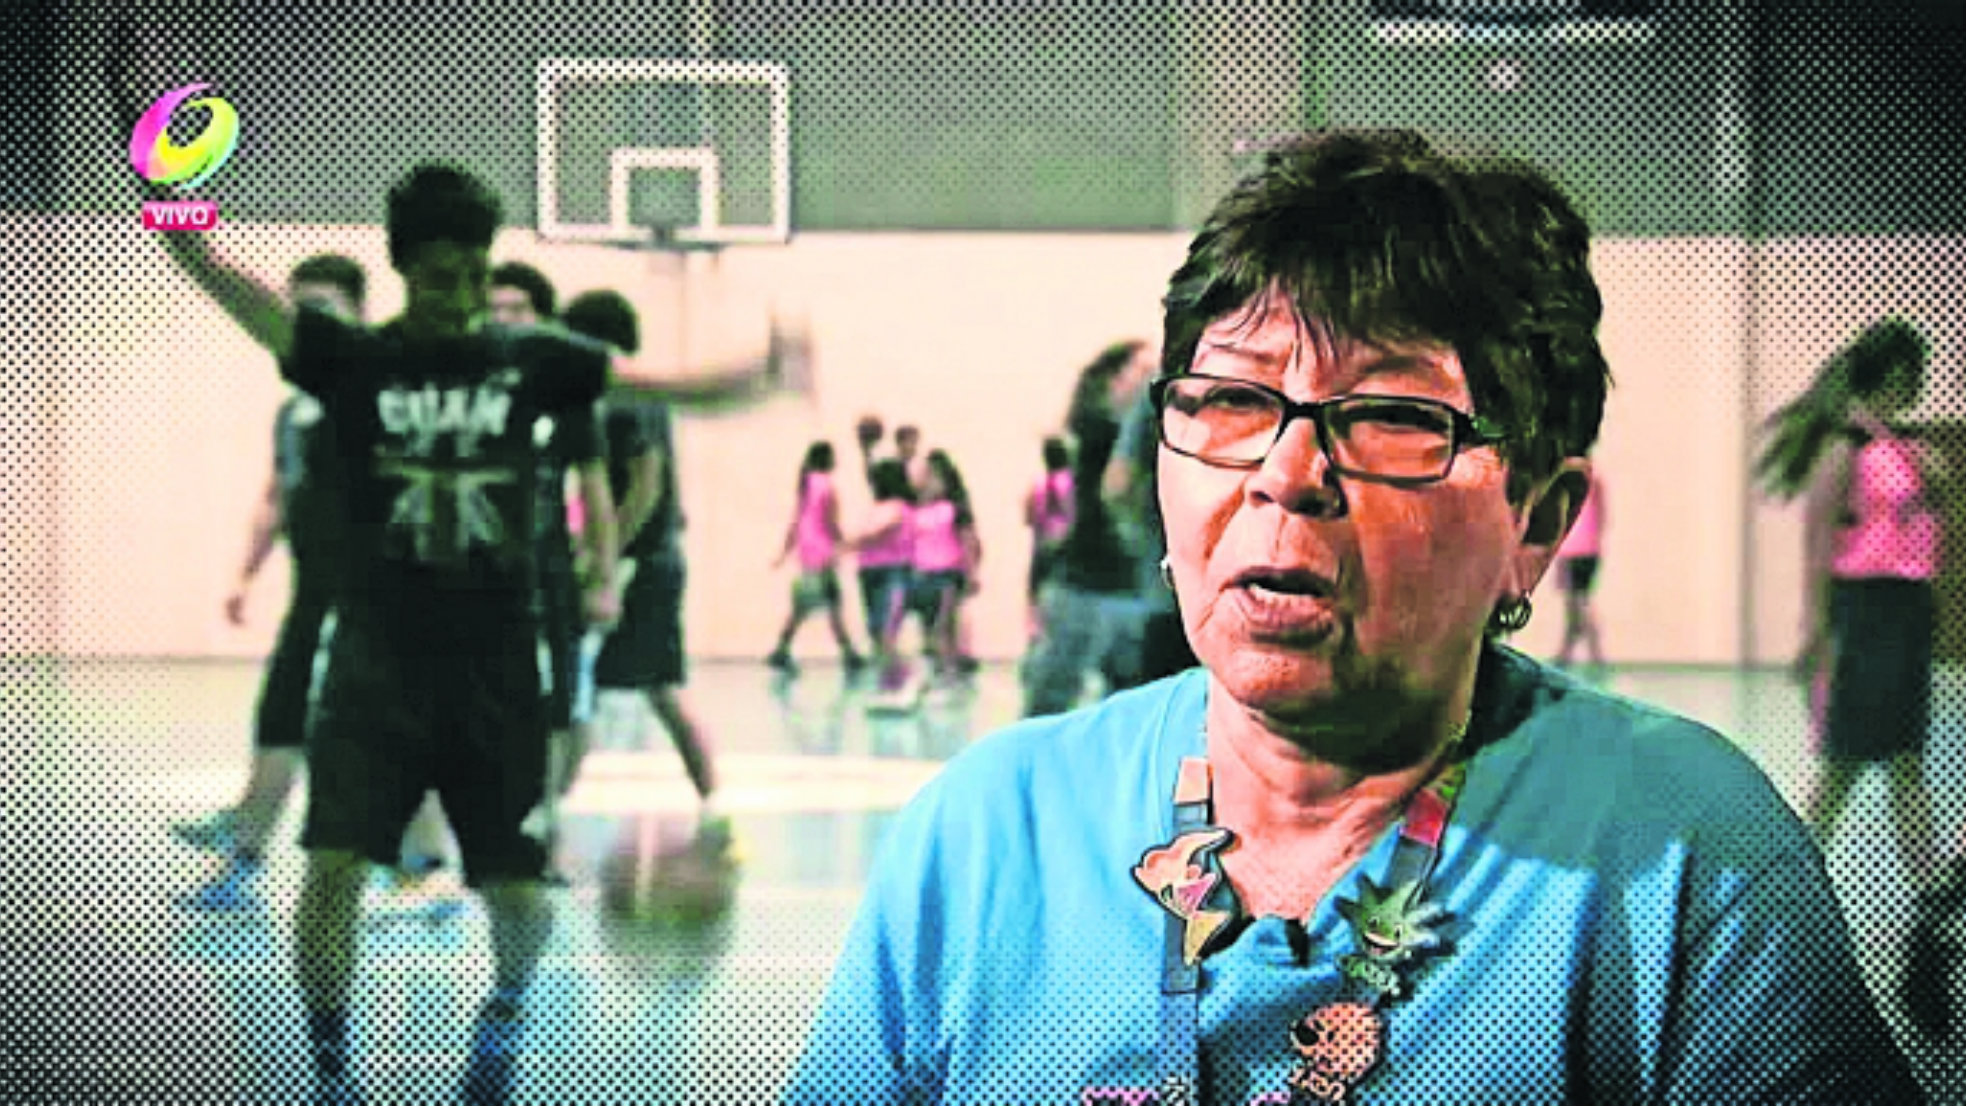 Conoce la historia de la profesora María Rebollo, pionera en el baloncesto  femenil | El Gráfico Historias y noticias en un solo lugar